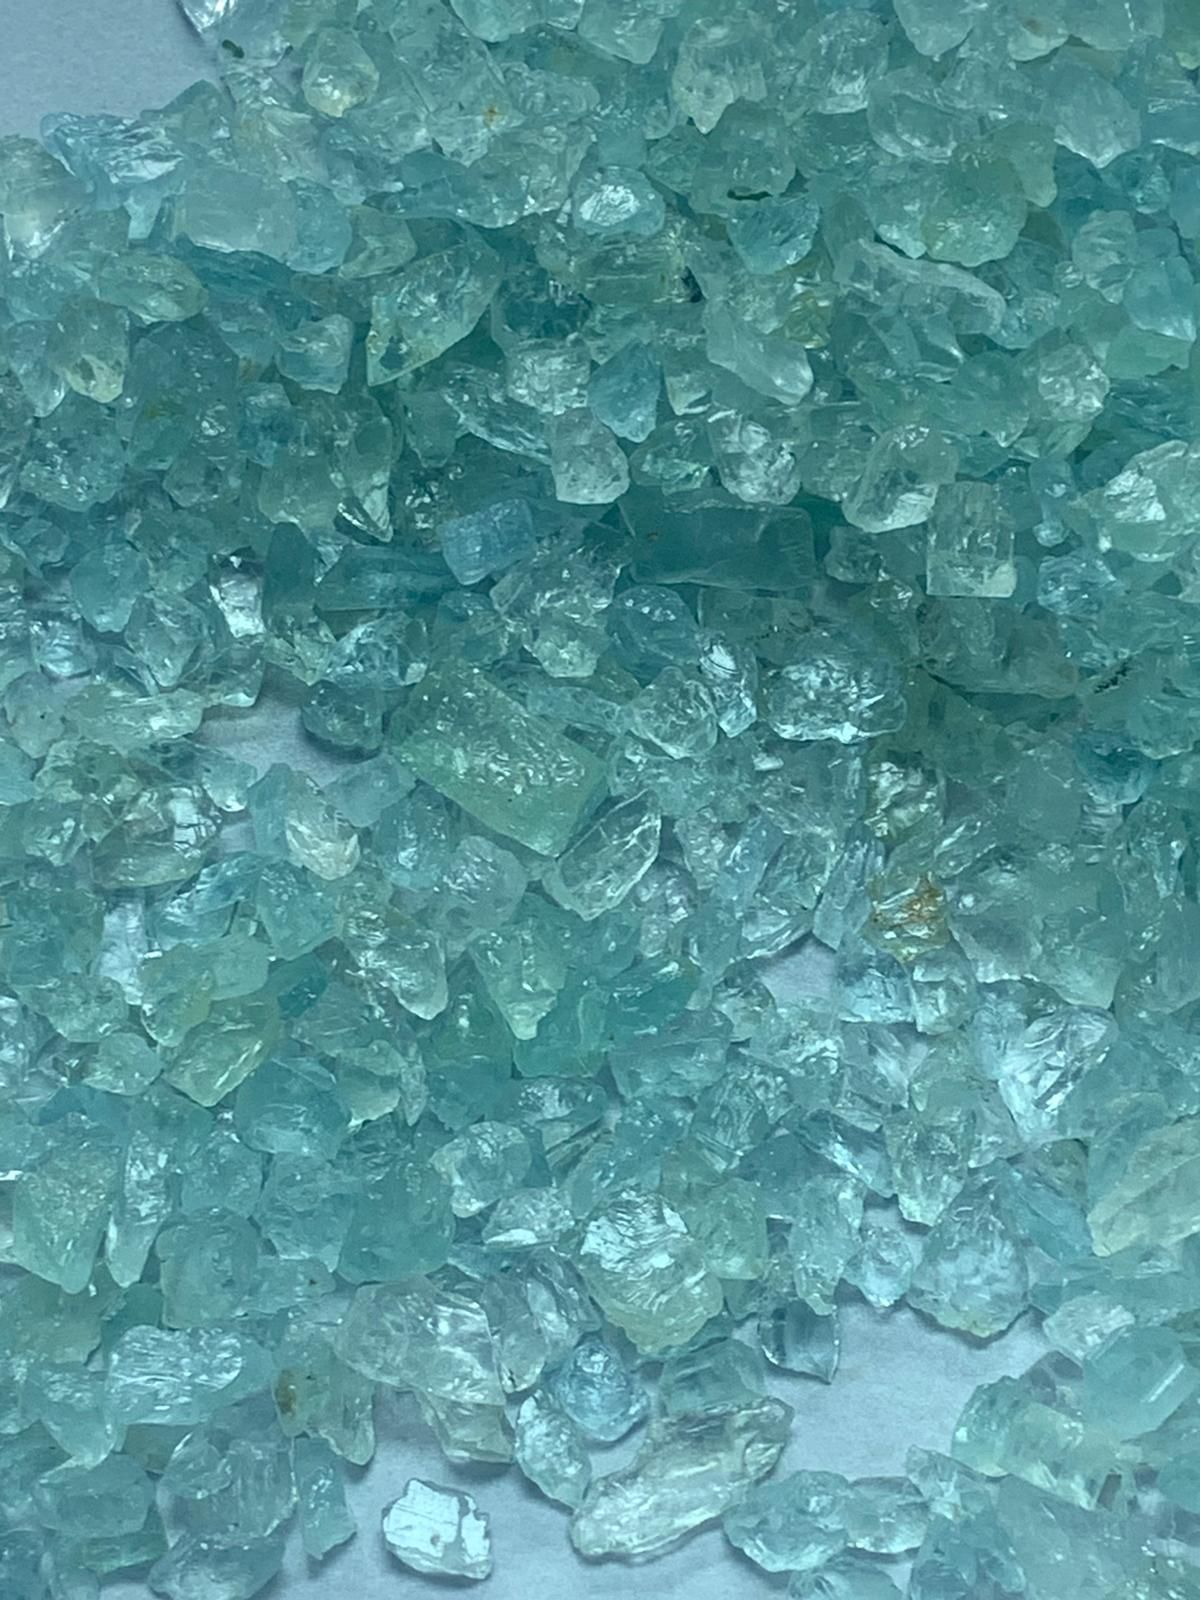 10kg Natura Raw Aquamarine Stones | Rough Aquamarine